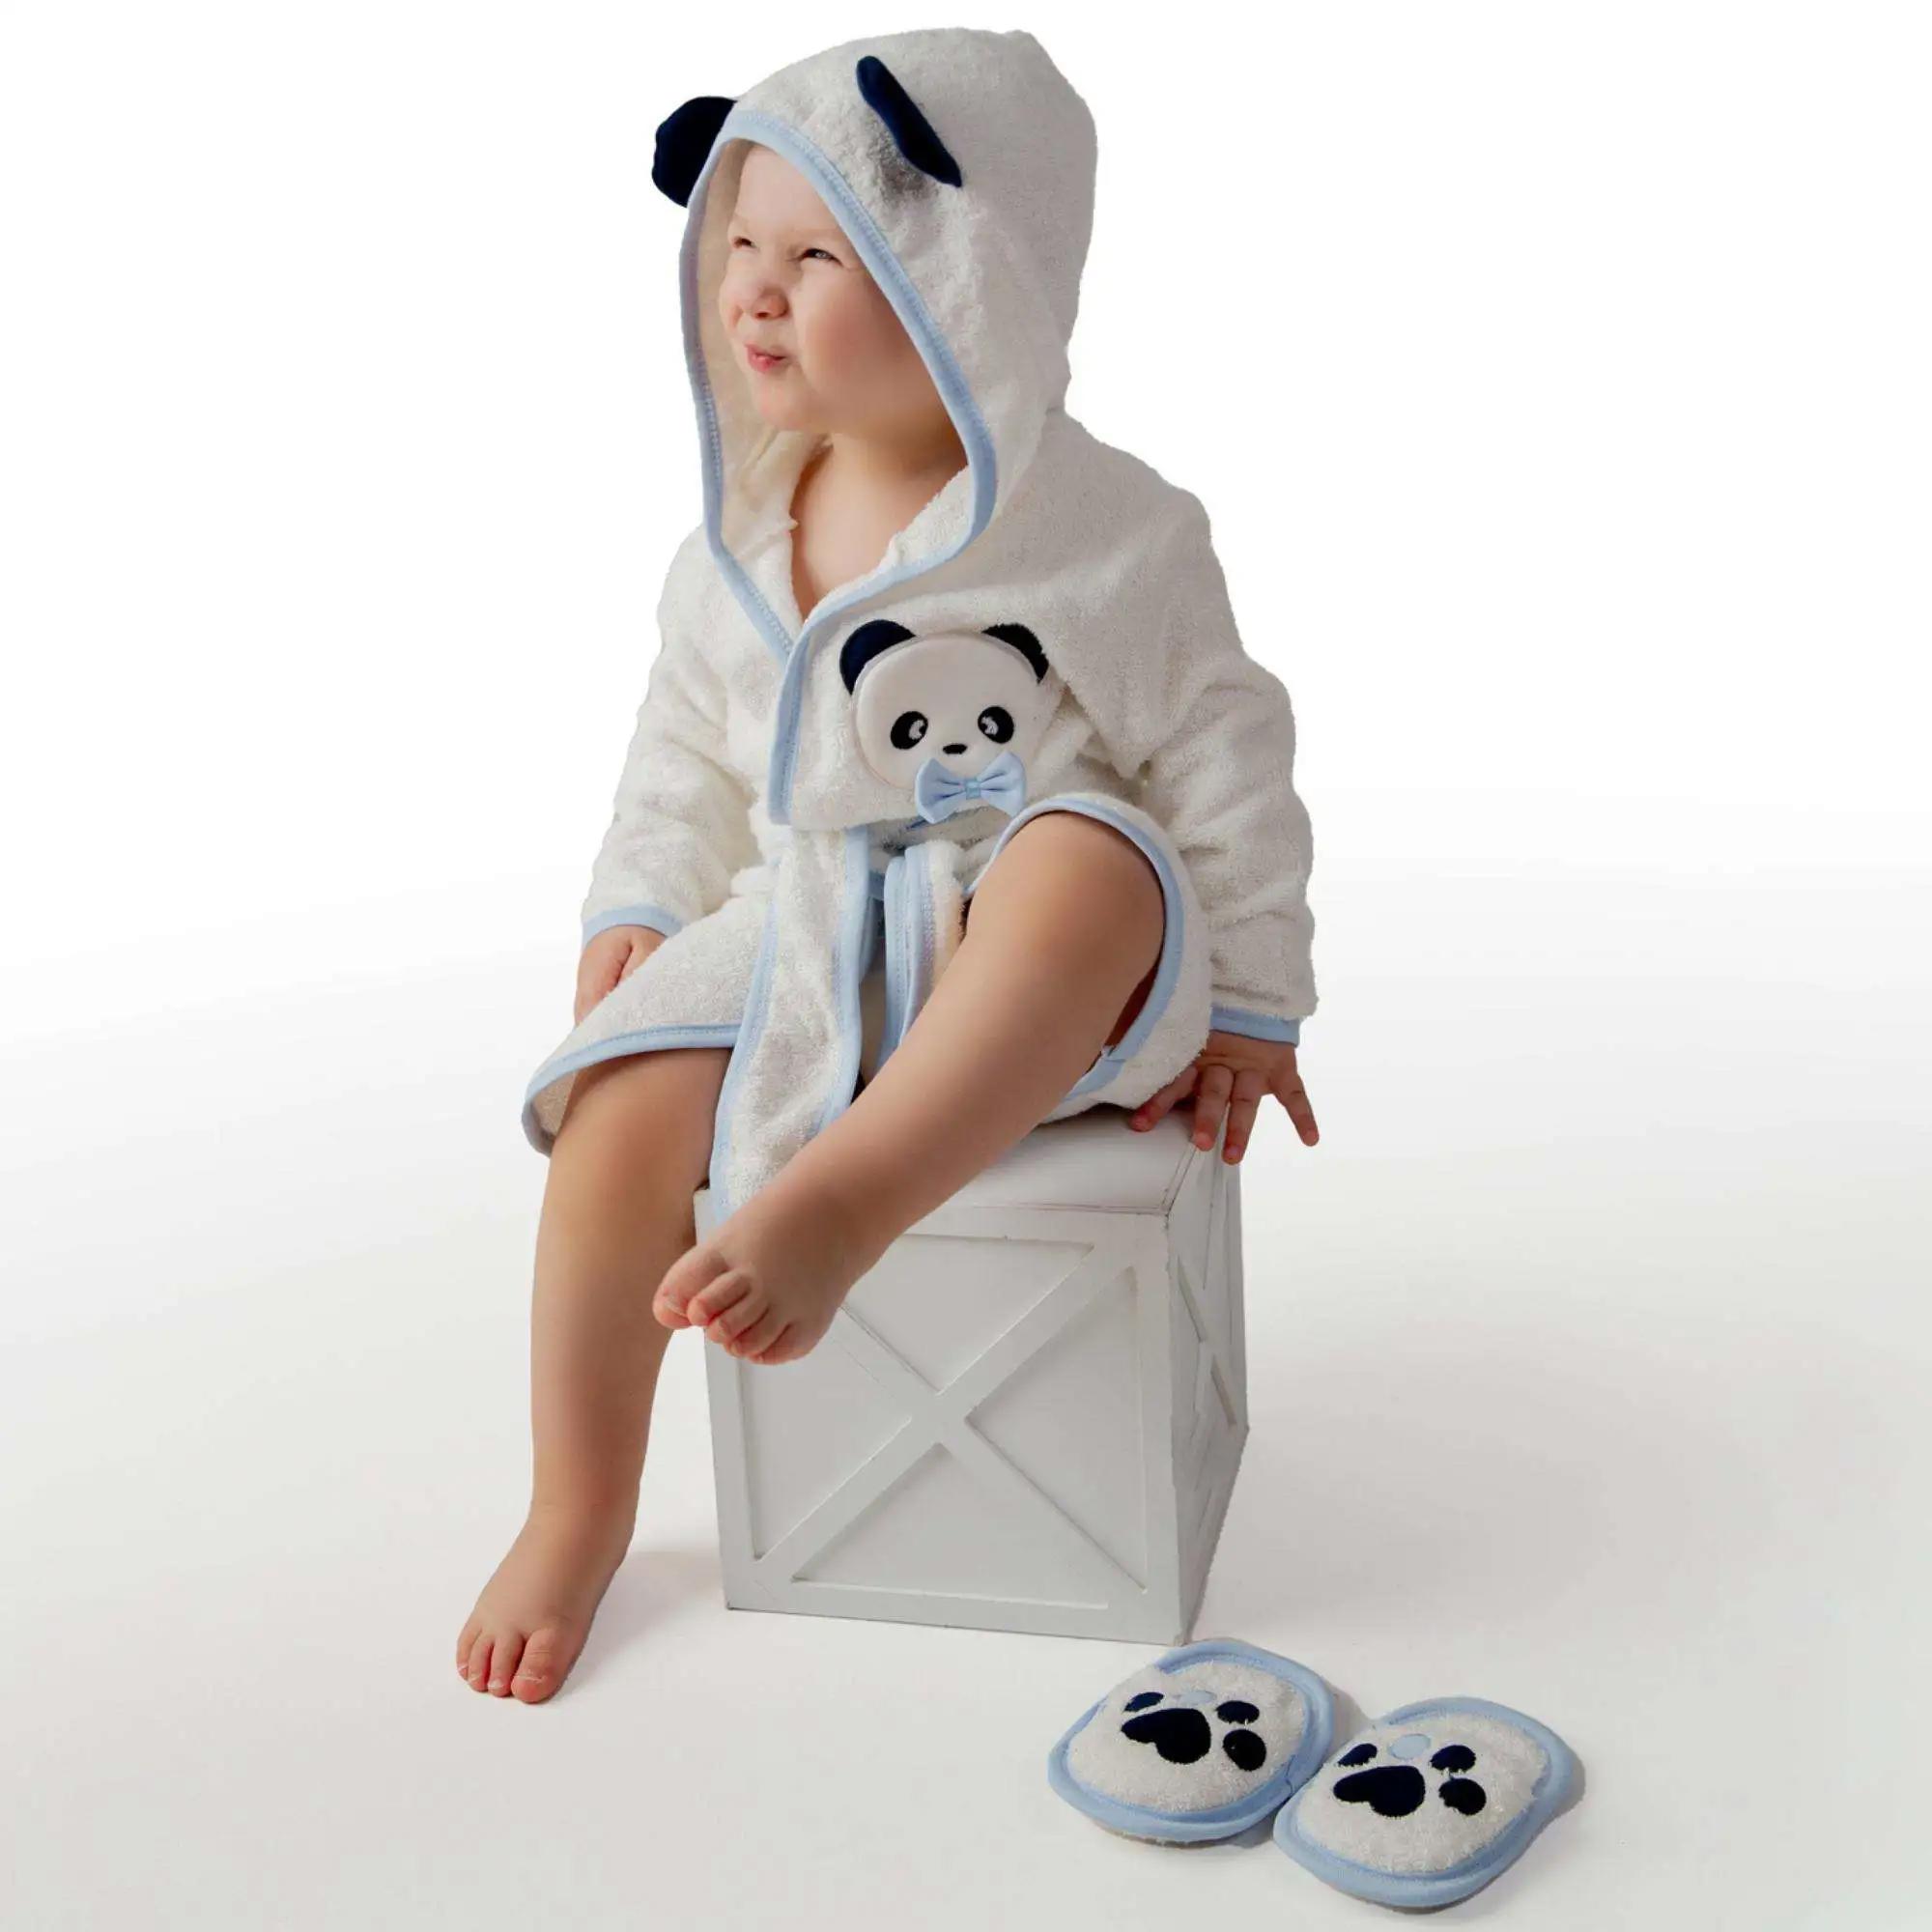 Sarebaby Sevimli Panda Erkek Bebek Bornoz Takımı Yeni Sezon